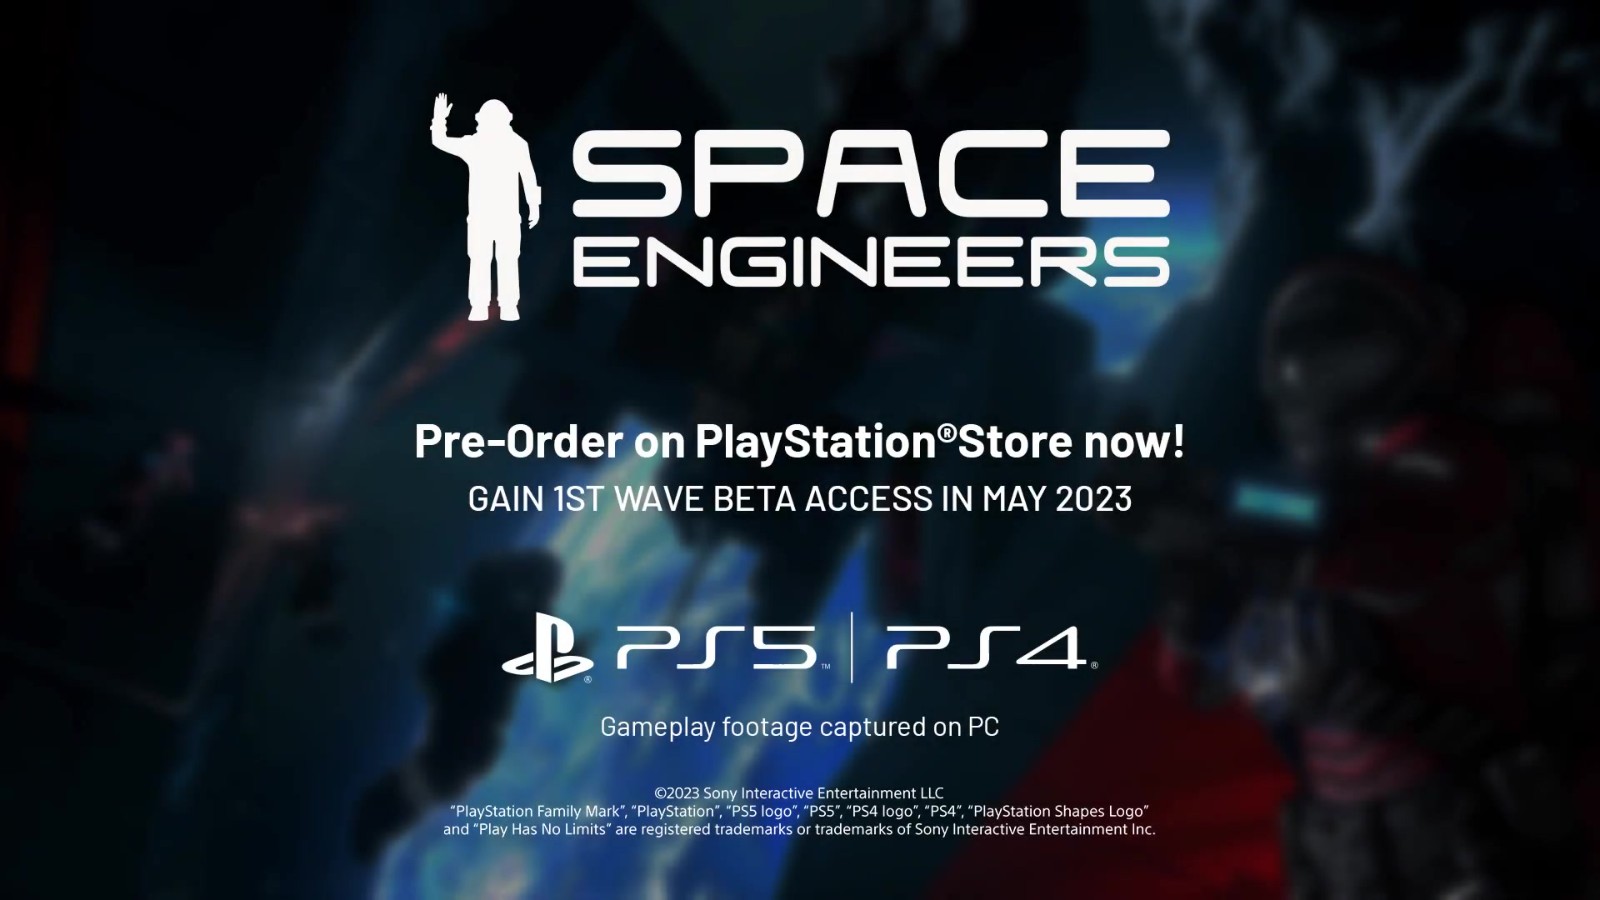 《太空工程师》PS5/PS4版5月11日开始Beta公测 二次世界 第7张